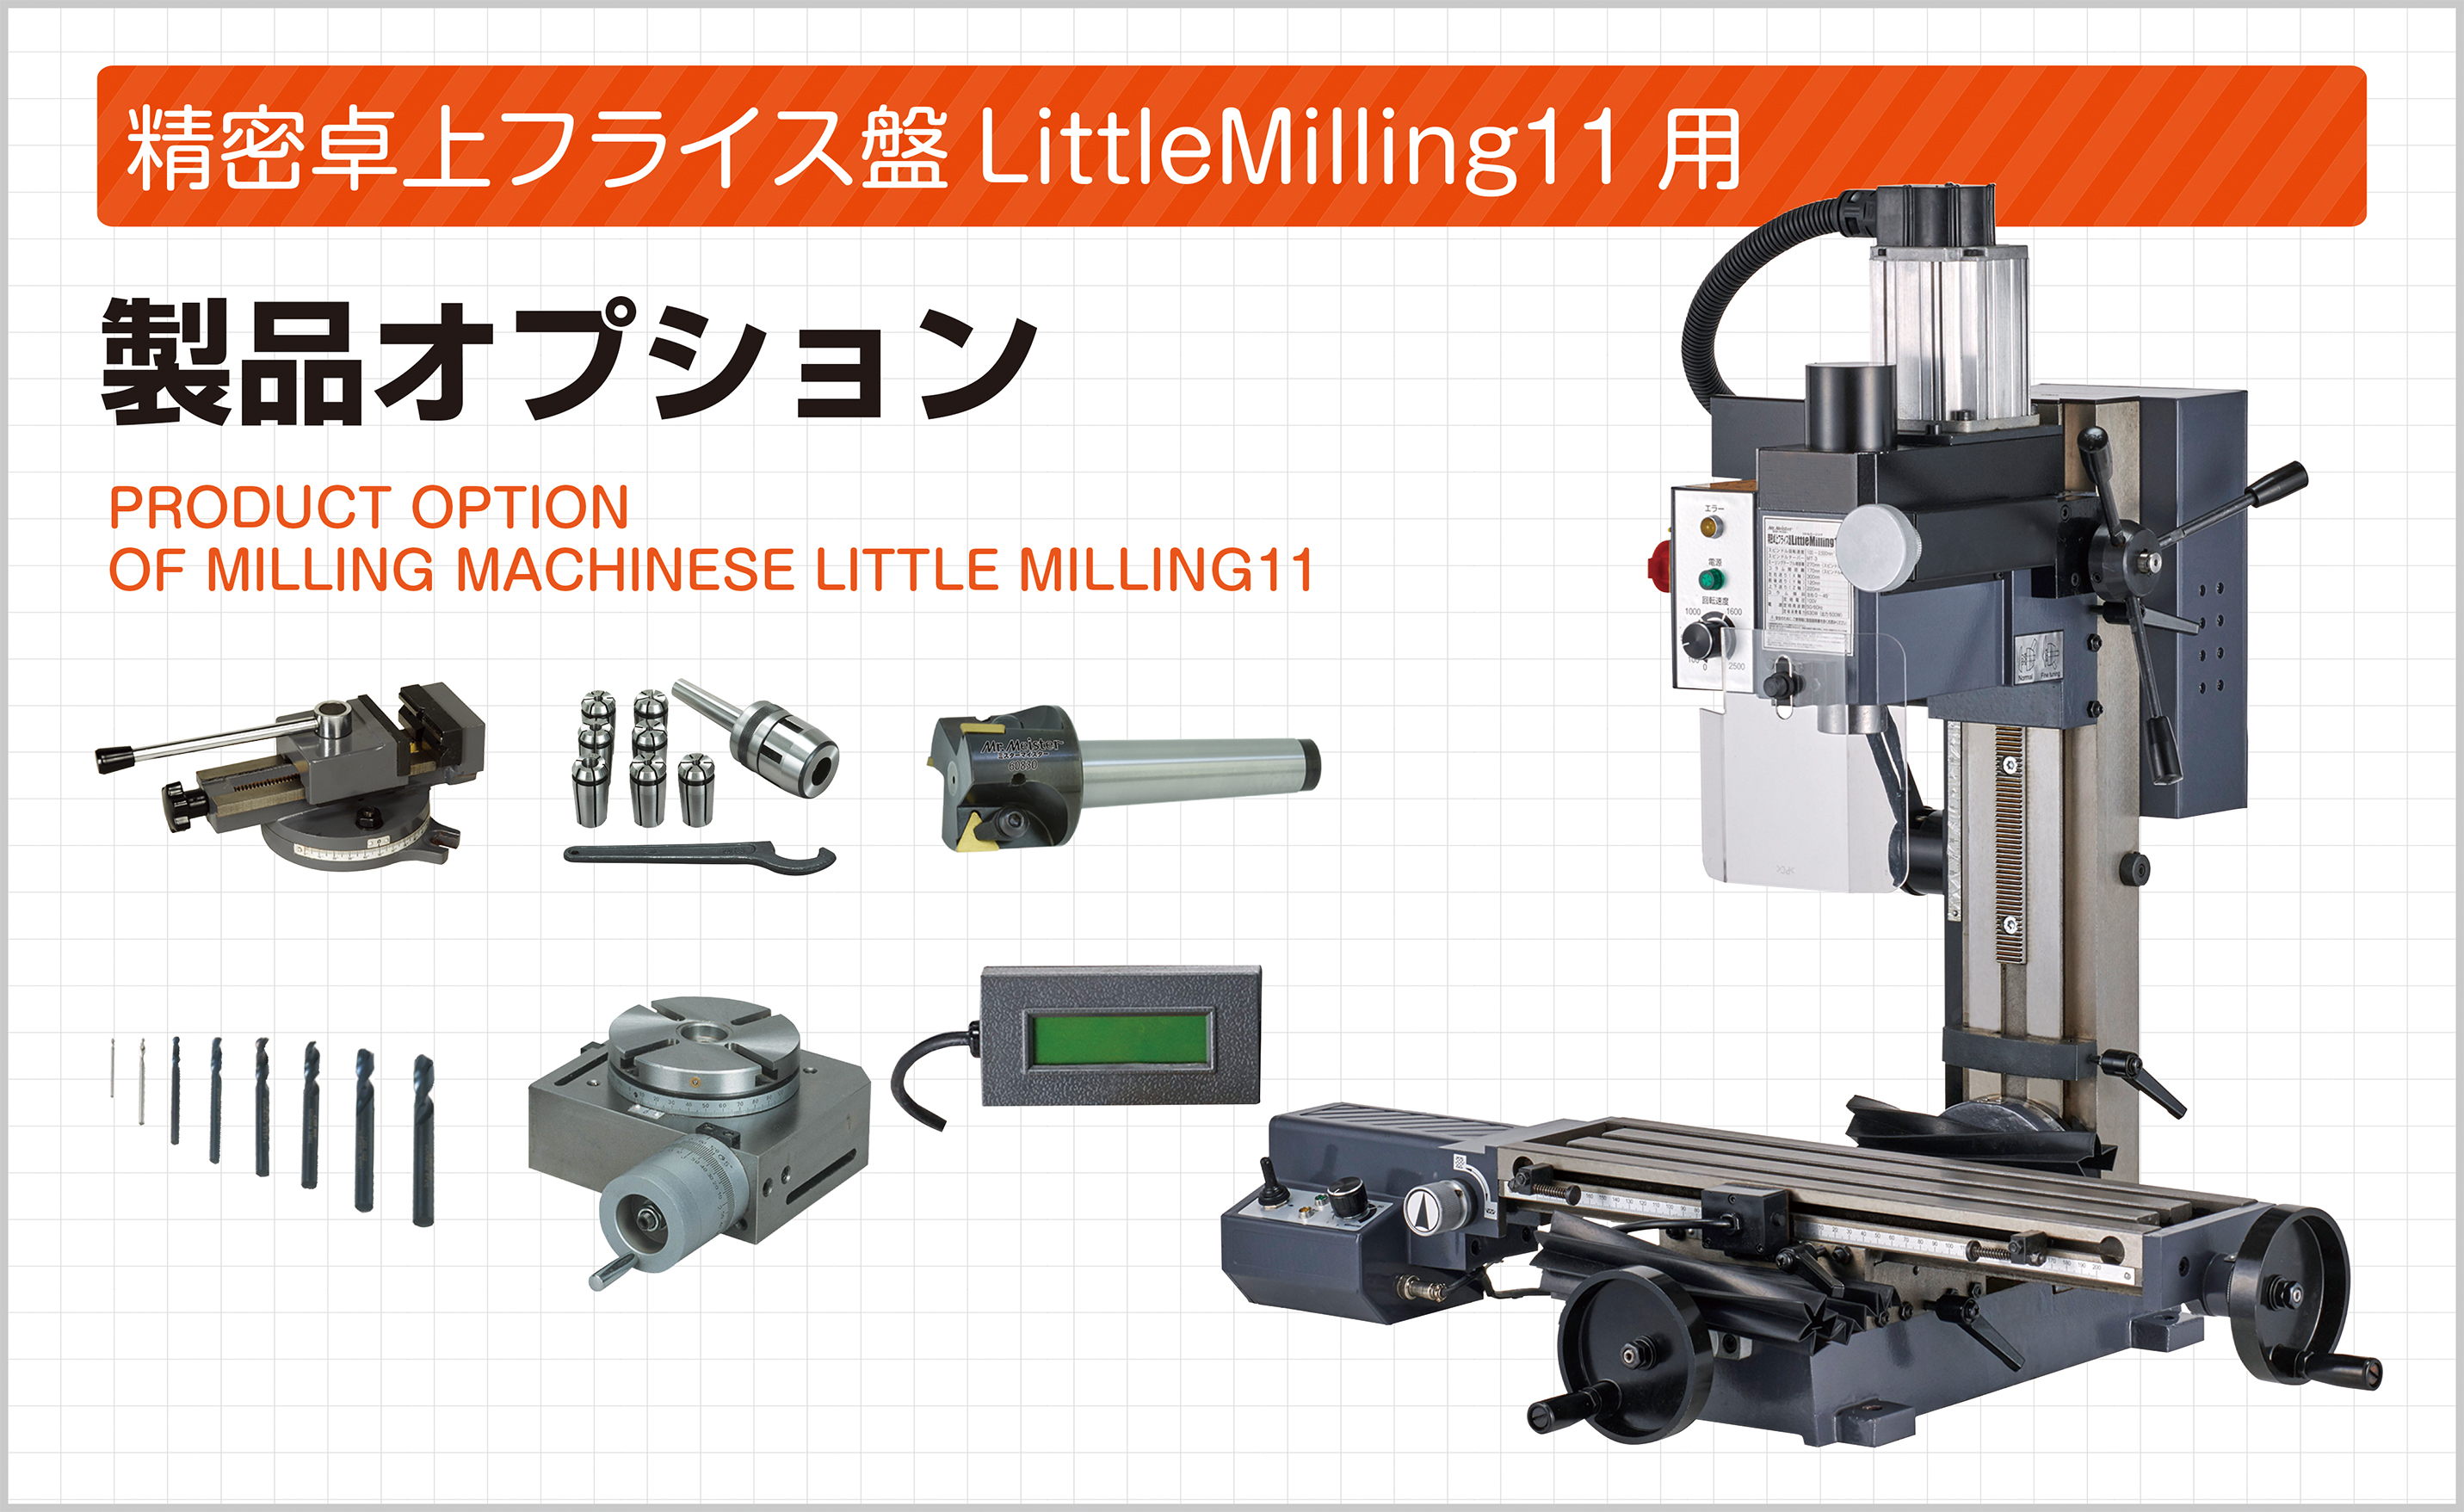 ミスターマイスター フライス盤 LittleMilling9用 オプションパーツ 強力型テーパーシャンクエンドミル [MT-3] [60730]